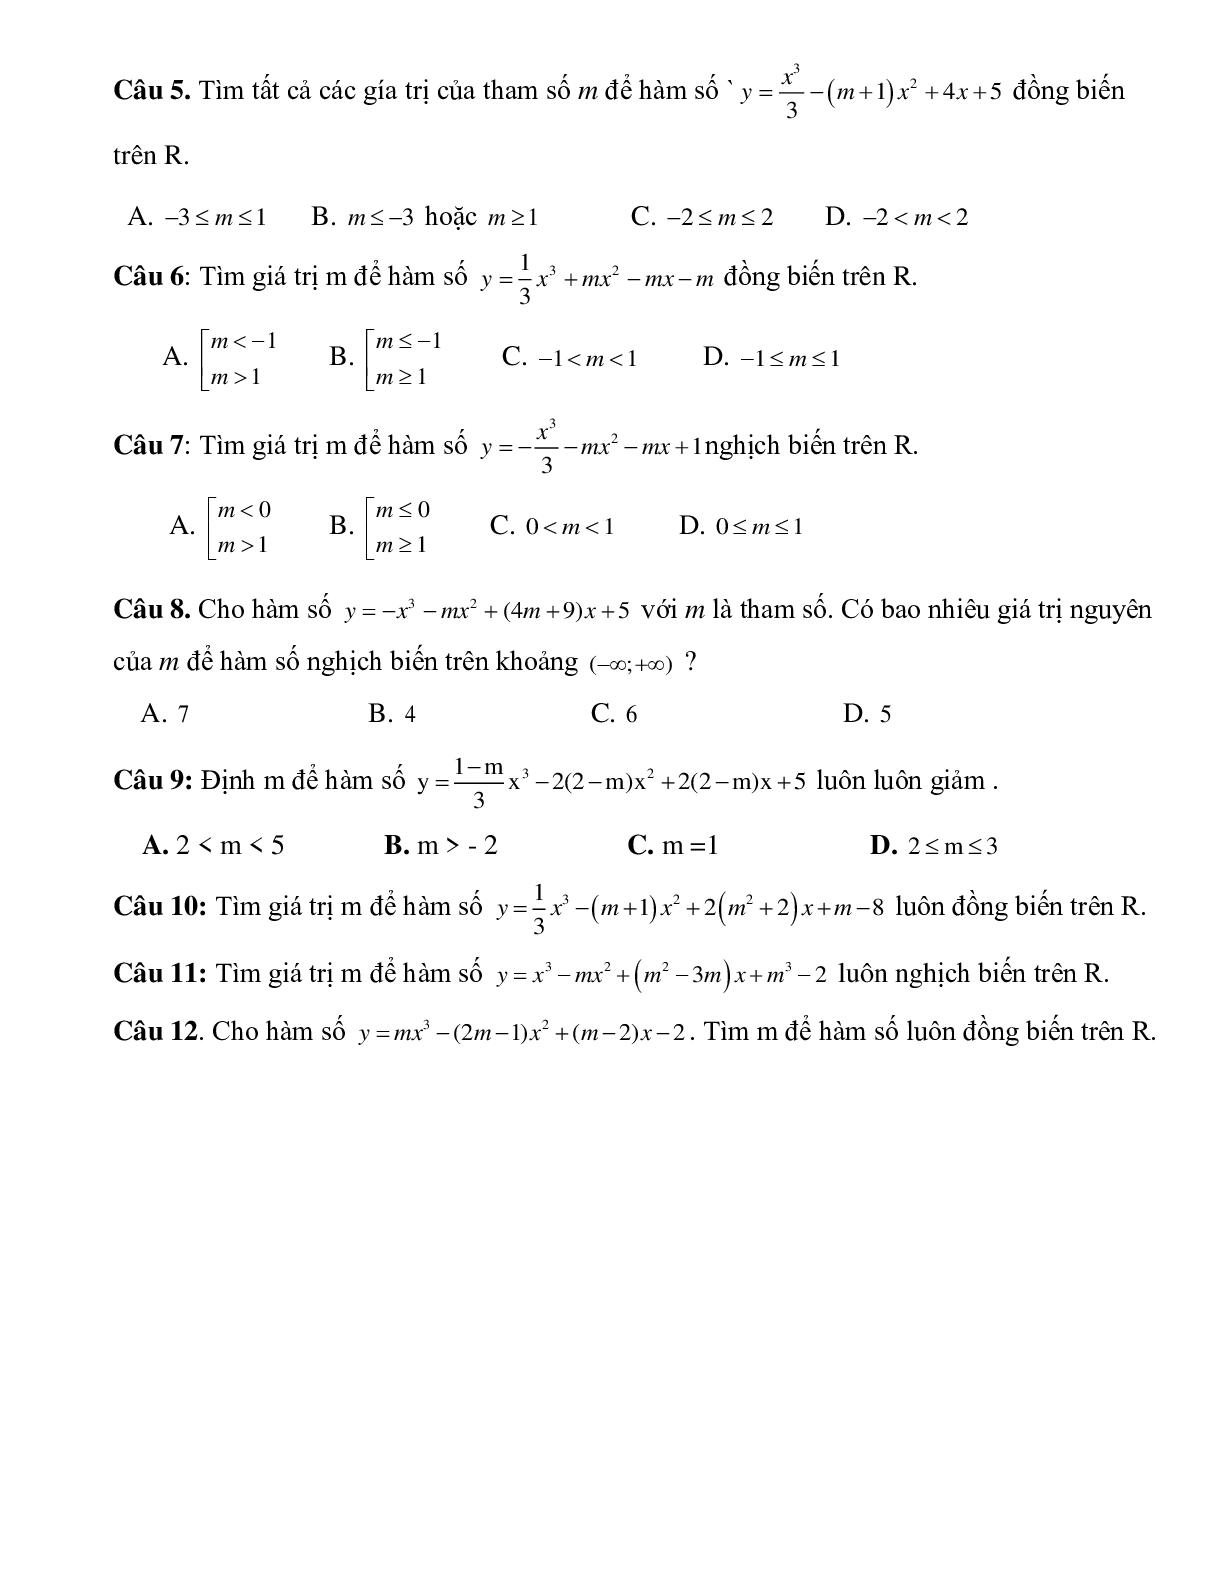 Tìm tham số M để hàm số bậc ba đồng biến, nghịch biến trên R (trang 2)